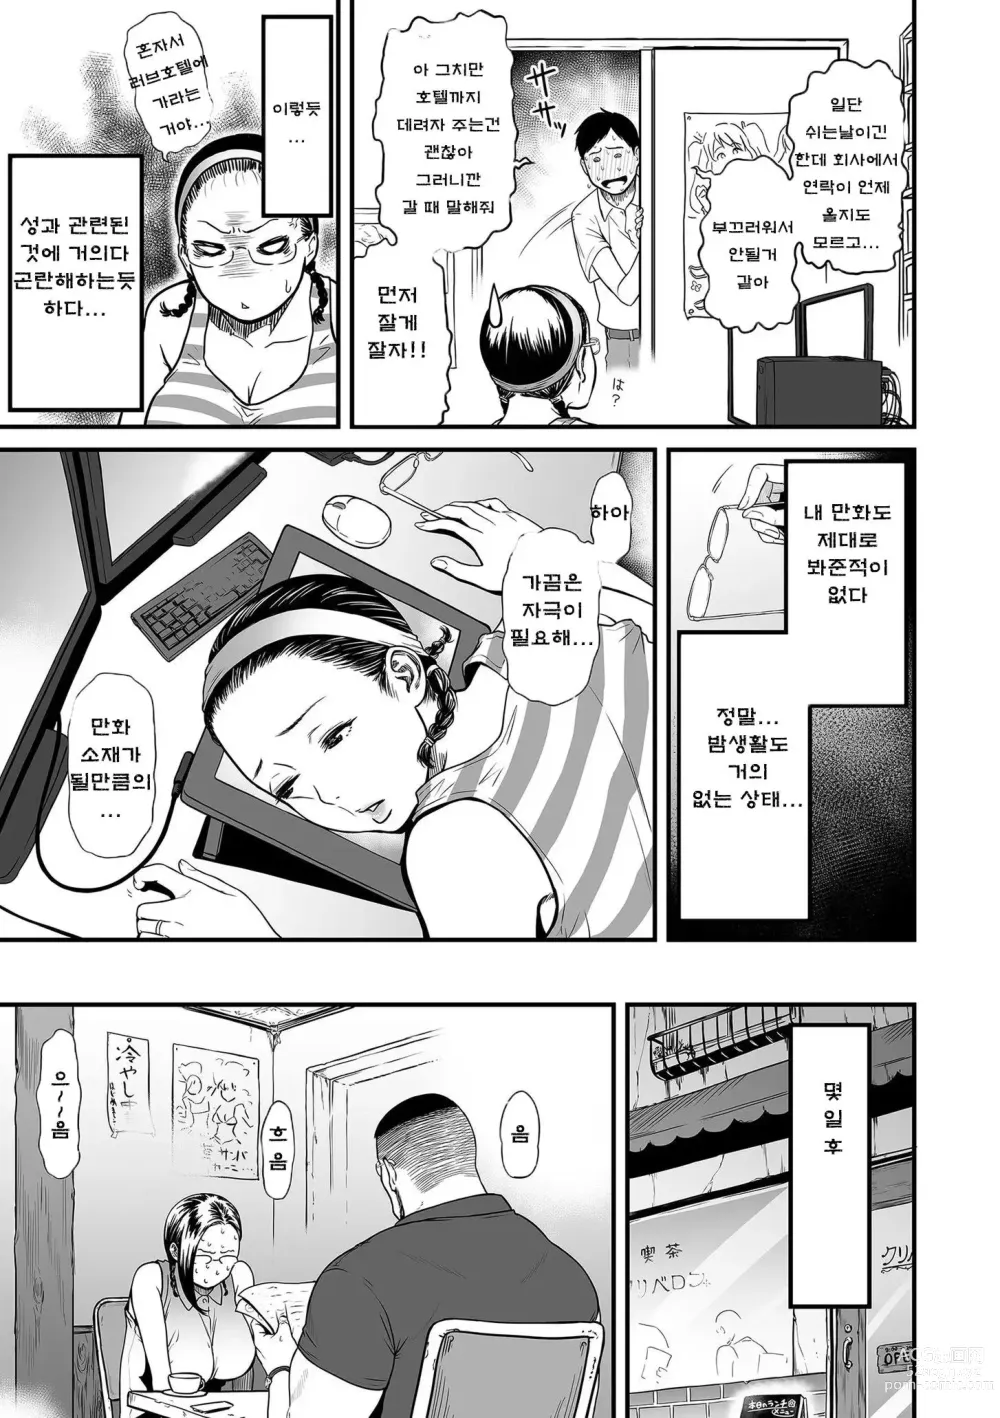 Page 17 of manga 여자 에로 만화가가 음란하다니 환상이지 않은가요